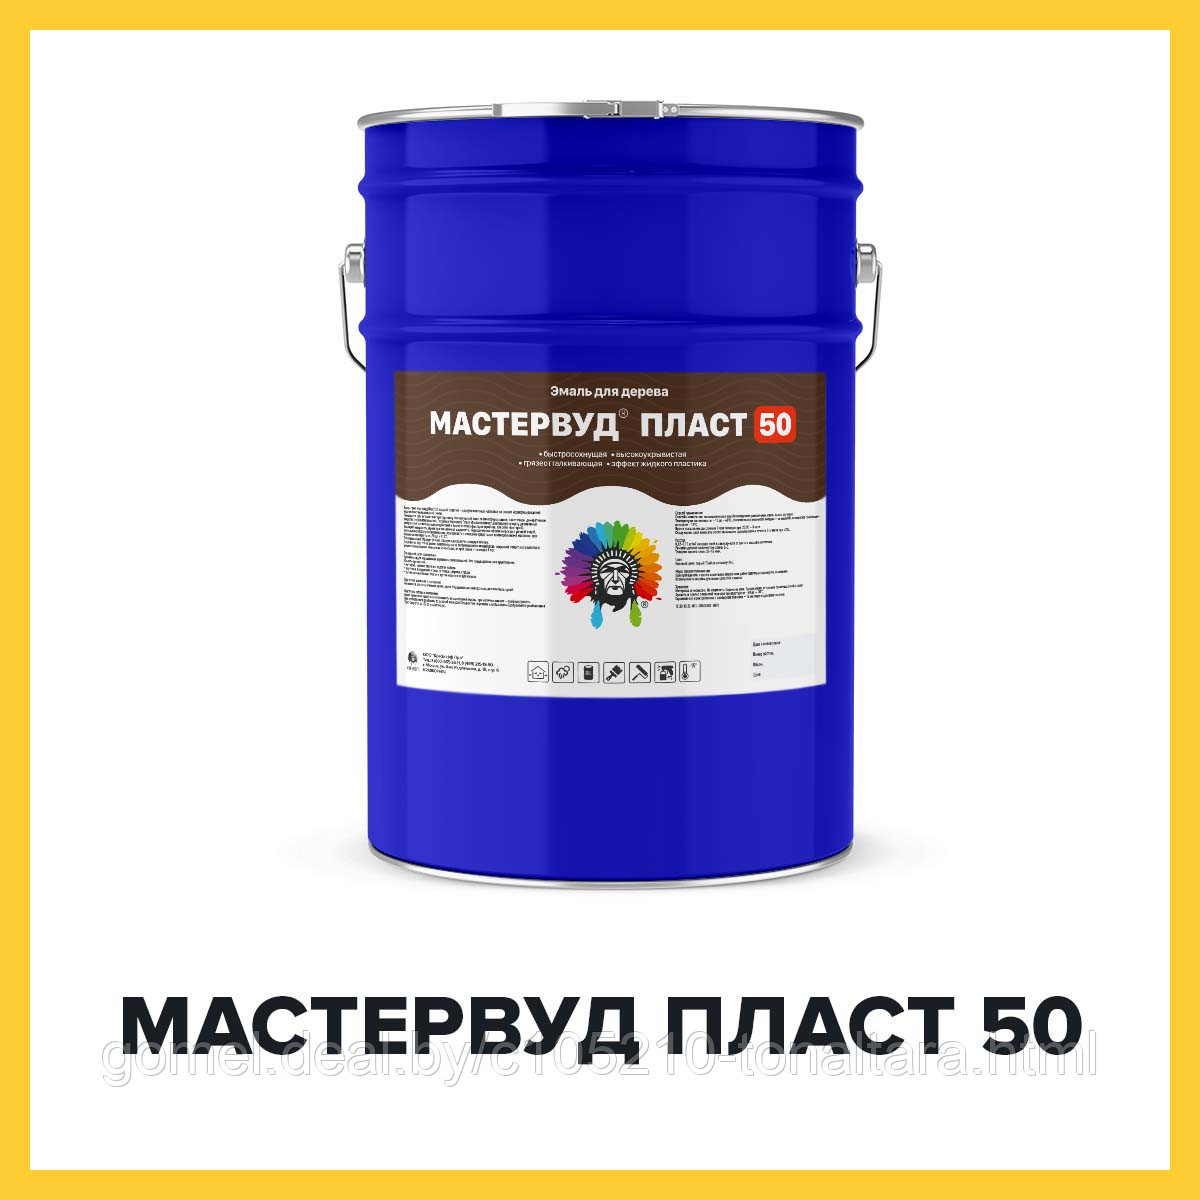 МАСТЕРВУД ПЛАСТ 50 (Краскофф Про) – краска (грунт-эмаль) для дерева с эффектом пластика